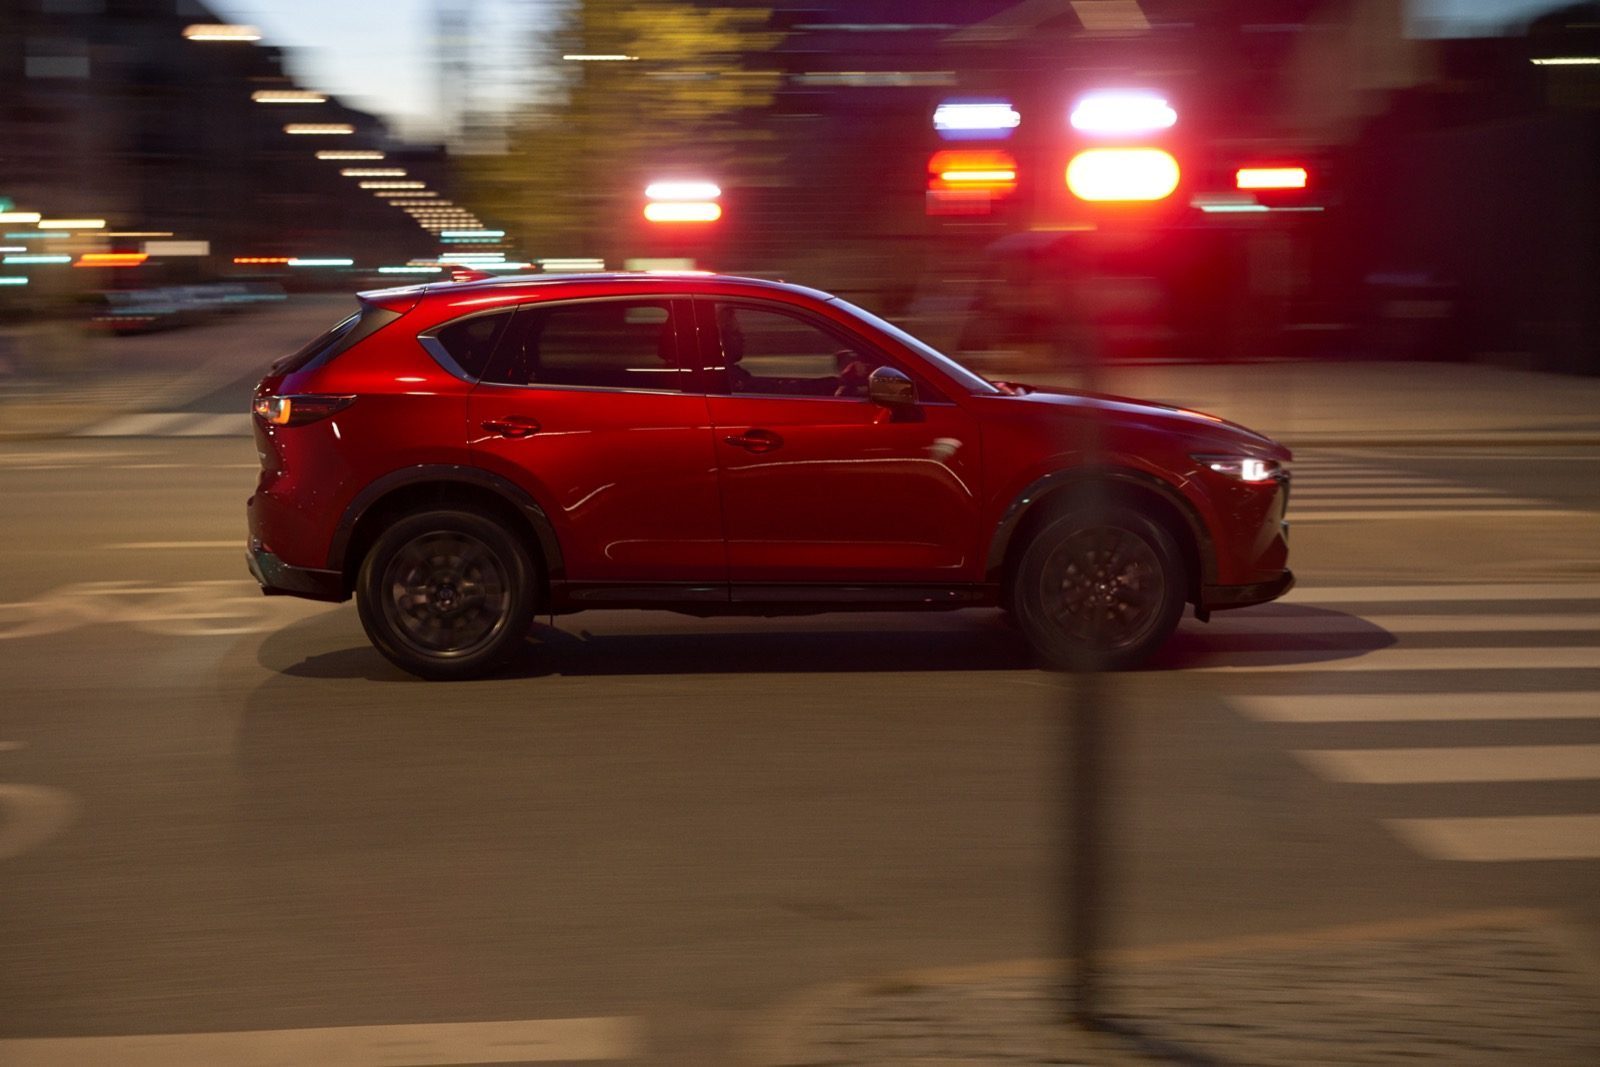 Wiskundige cliënt Sta op Vernieuwde Mazda CX-5 is lekker aangenaam dik - Autoblog.nl